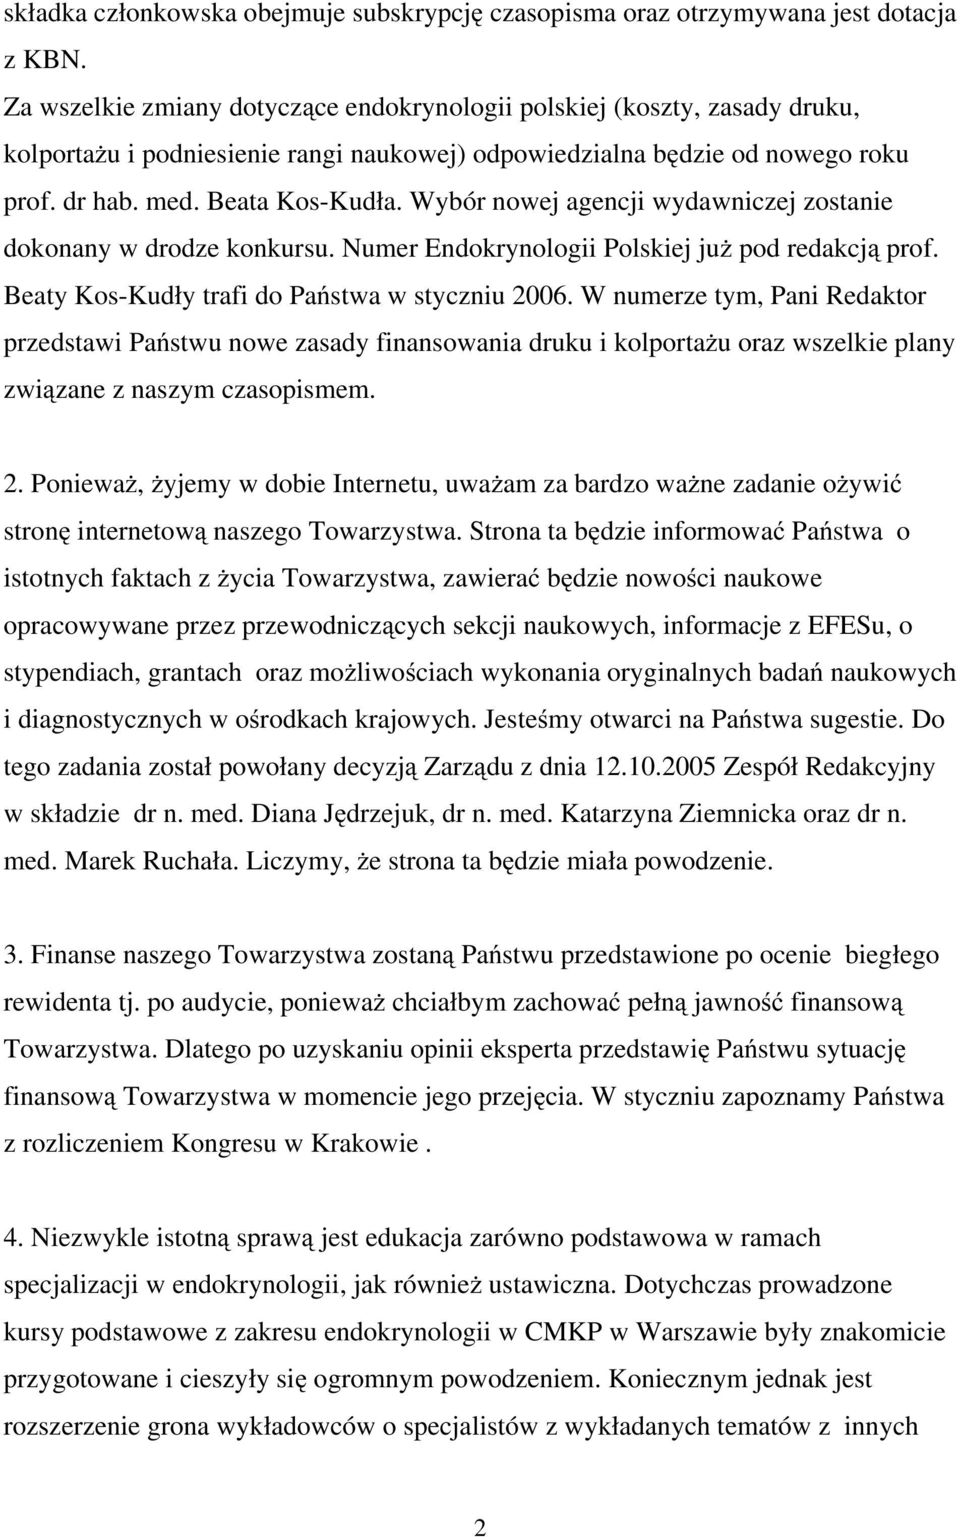 Wybór nowej agencji wydawniczej zostanie dokonany w drodze konkursu. Numer Endokrynologii Polskiej już pod redakcją prof. Beaty Kos-Kudły trafi do Państwa w styczniu 2006.